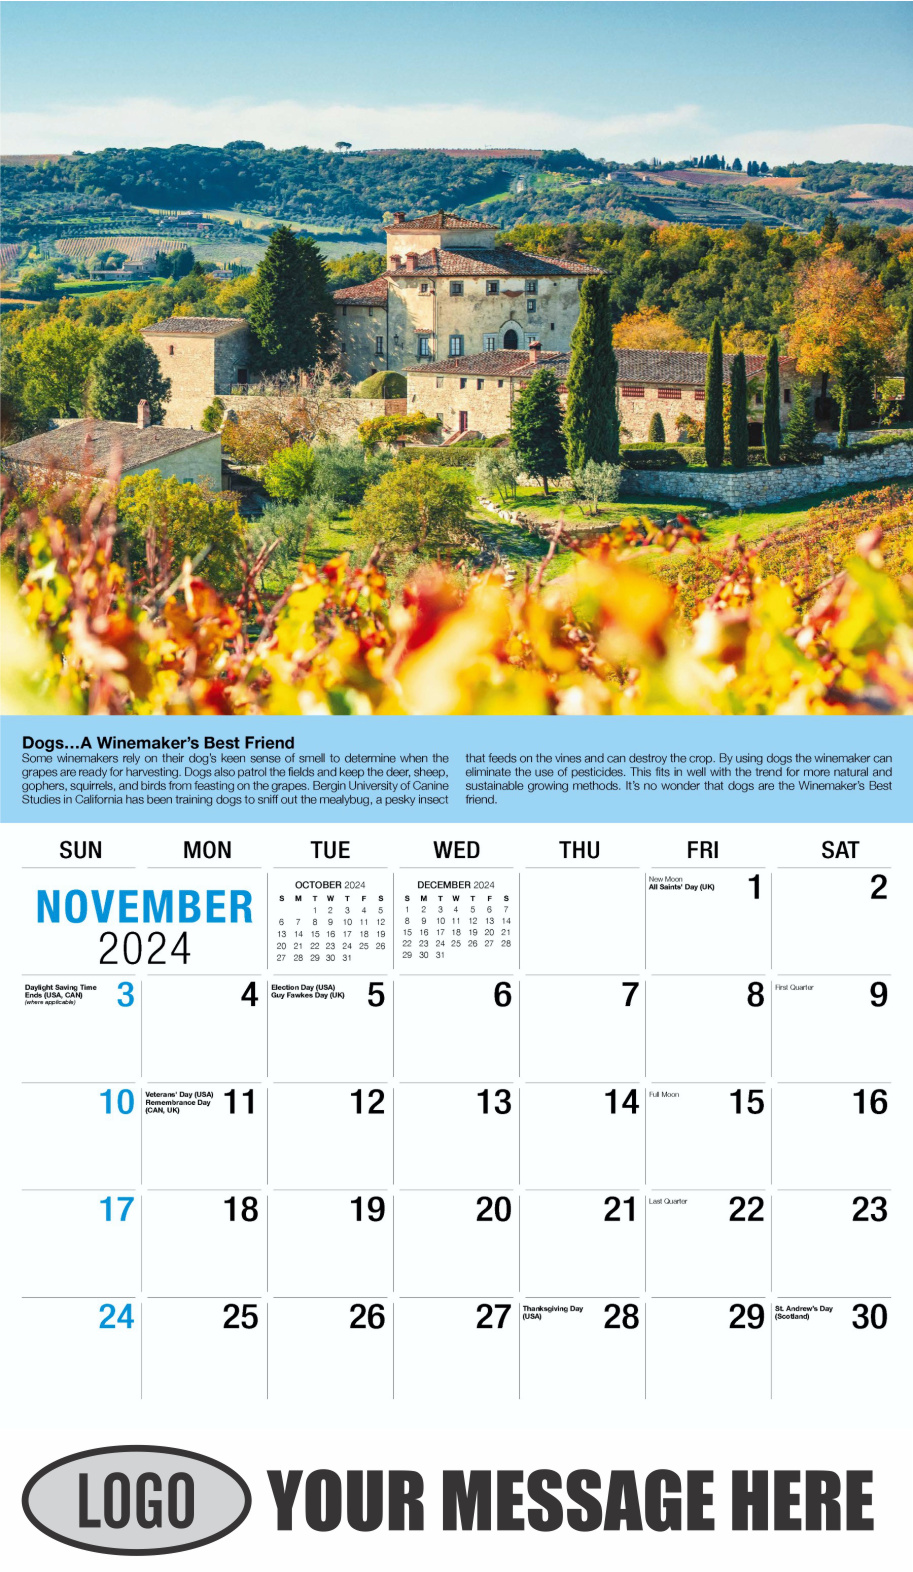 Vintages - Wine Tips 2024 Business Promo Calendar - November